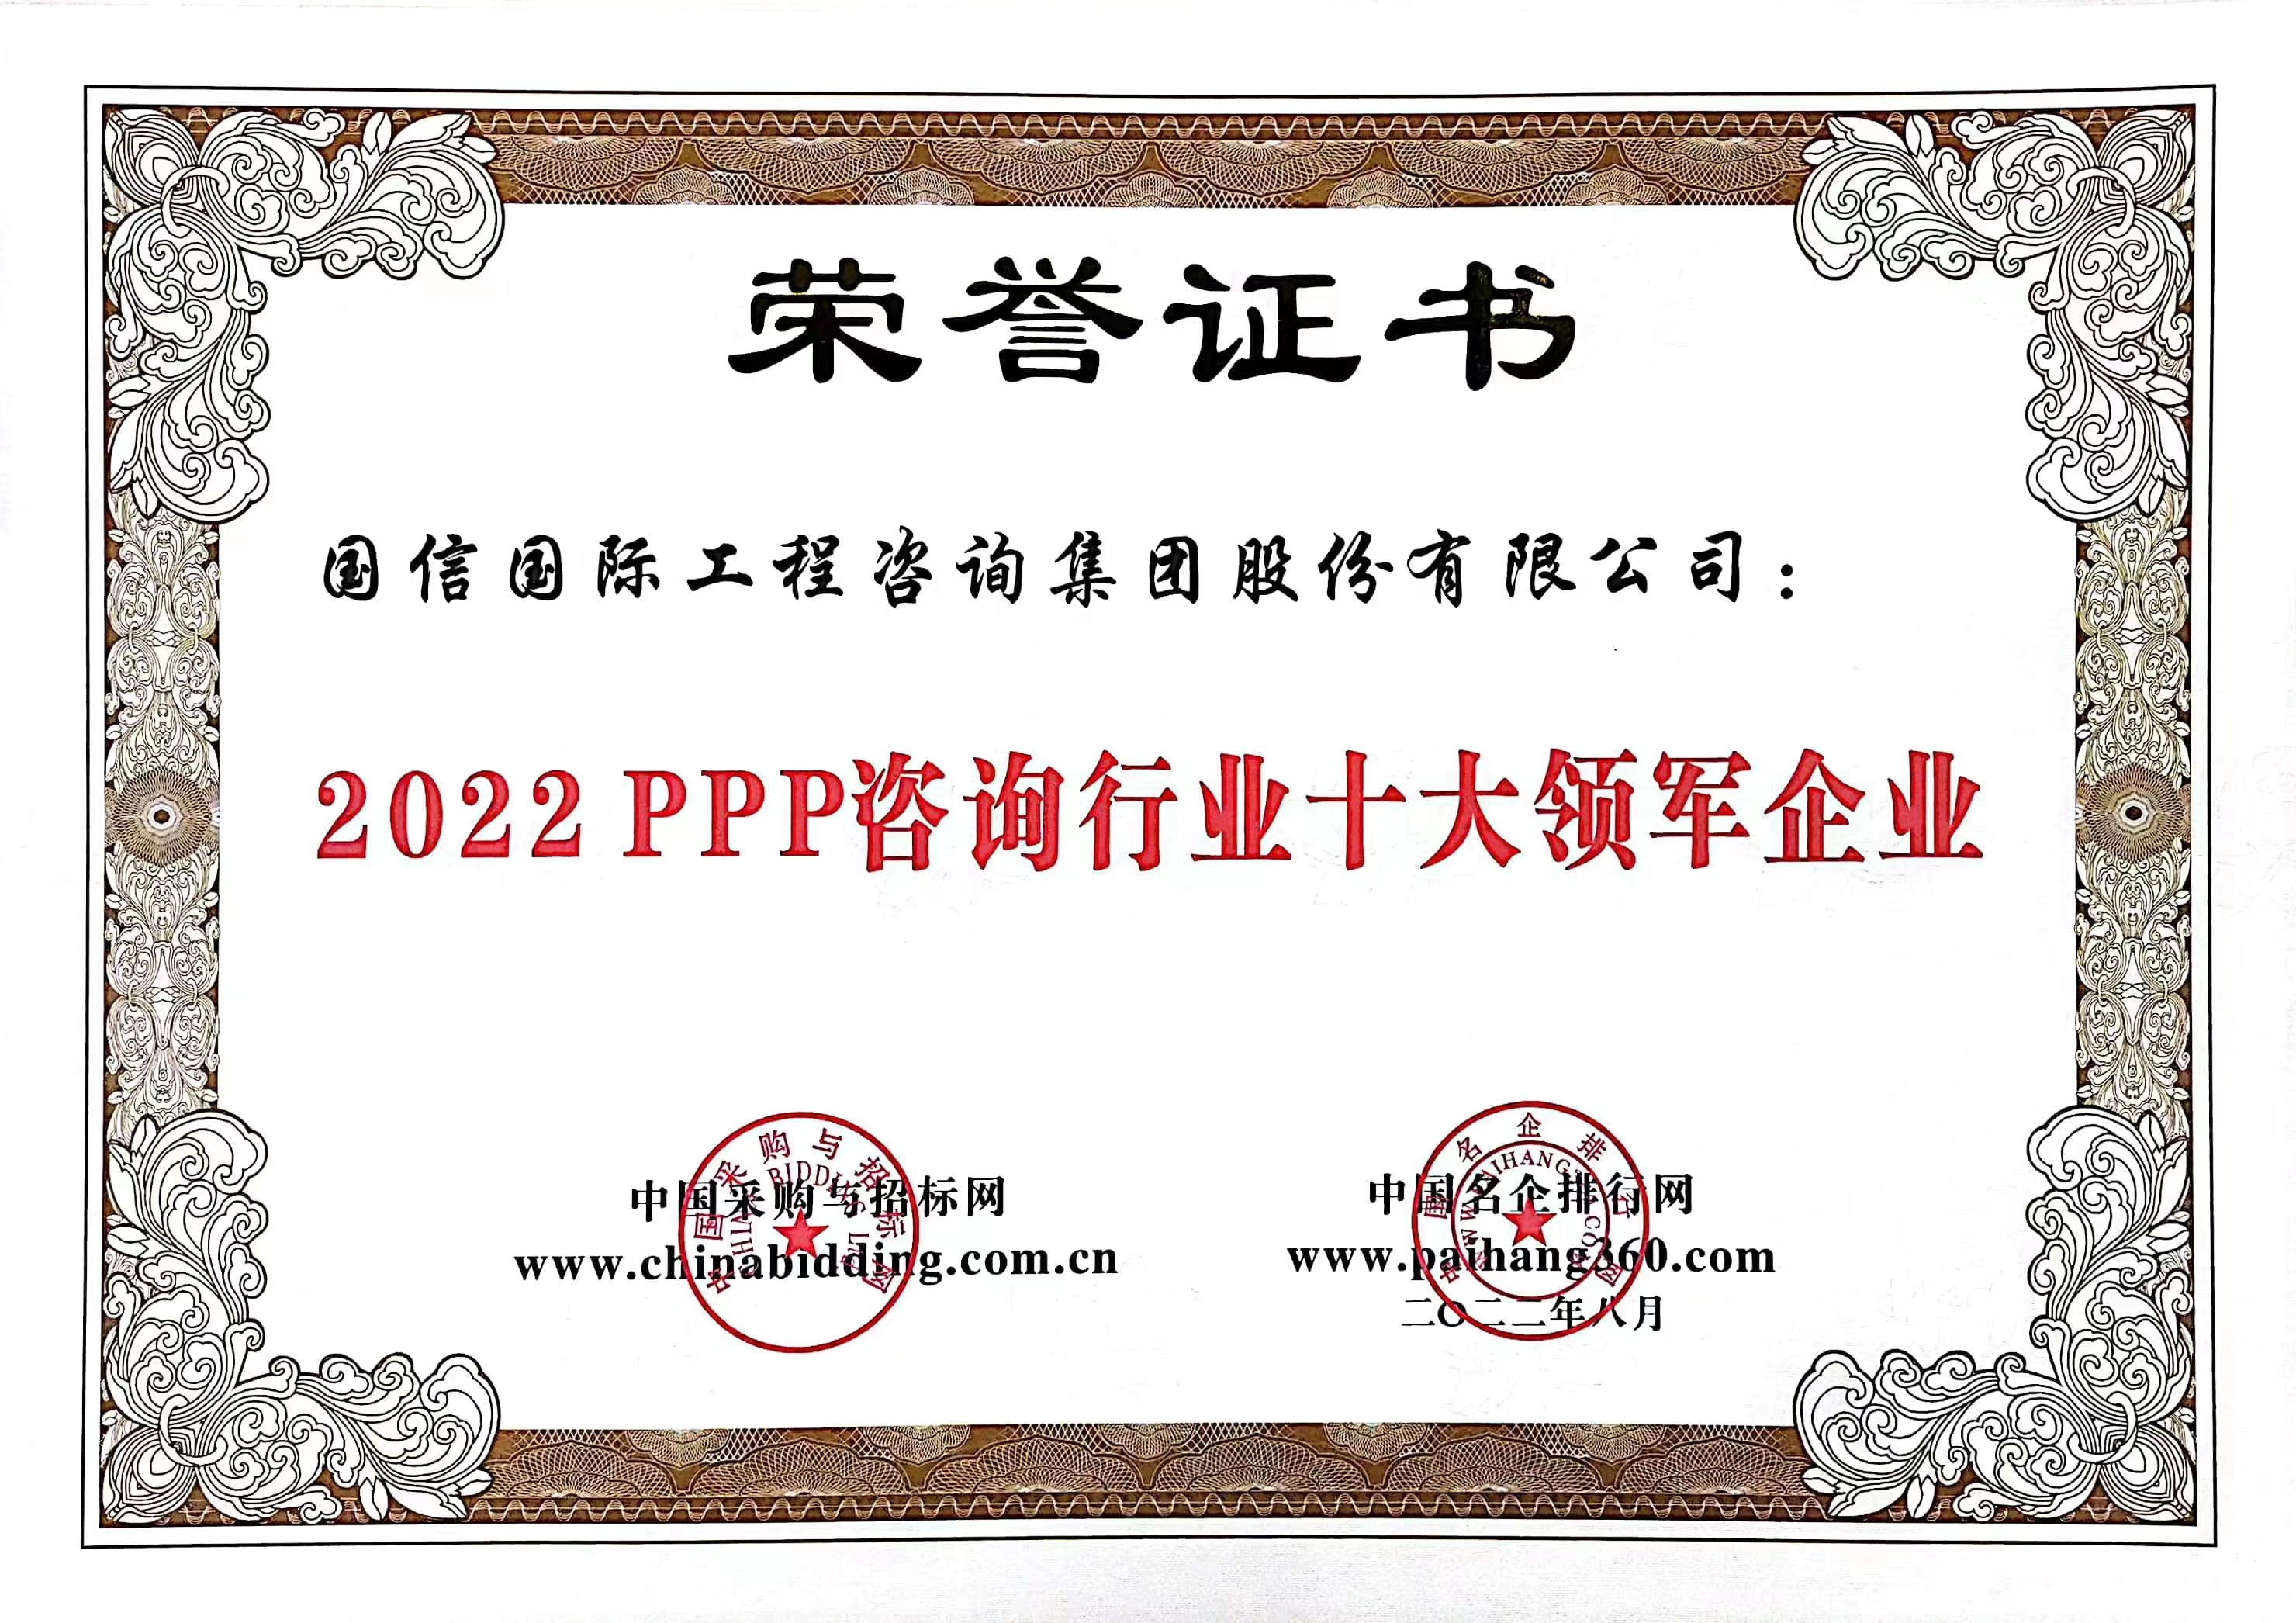 2022PPP咨询行业十大领军企业